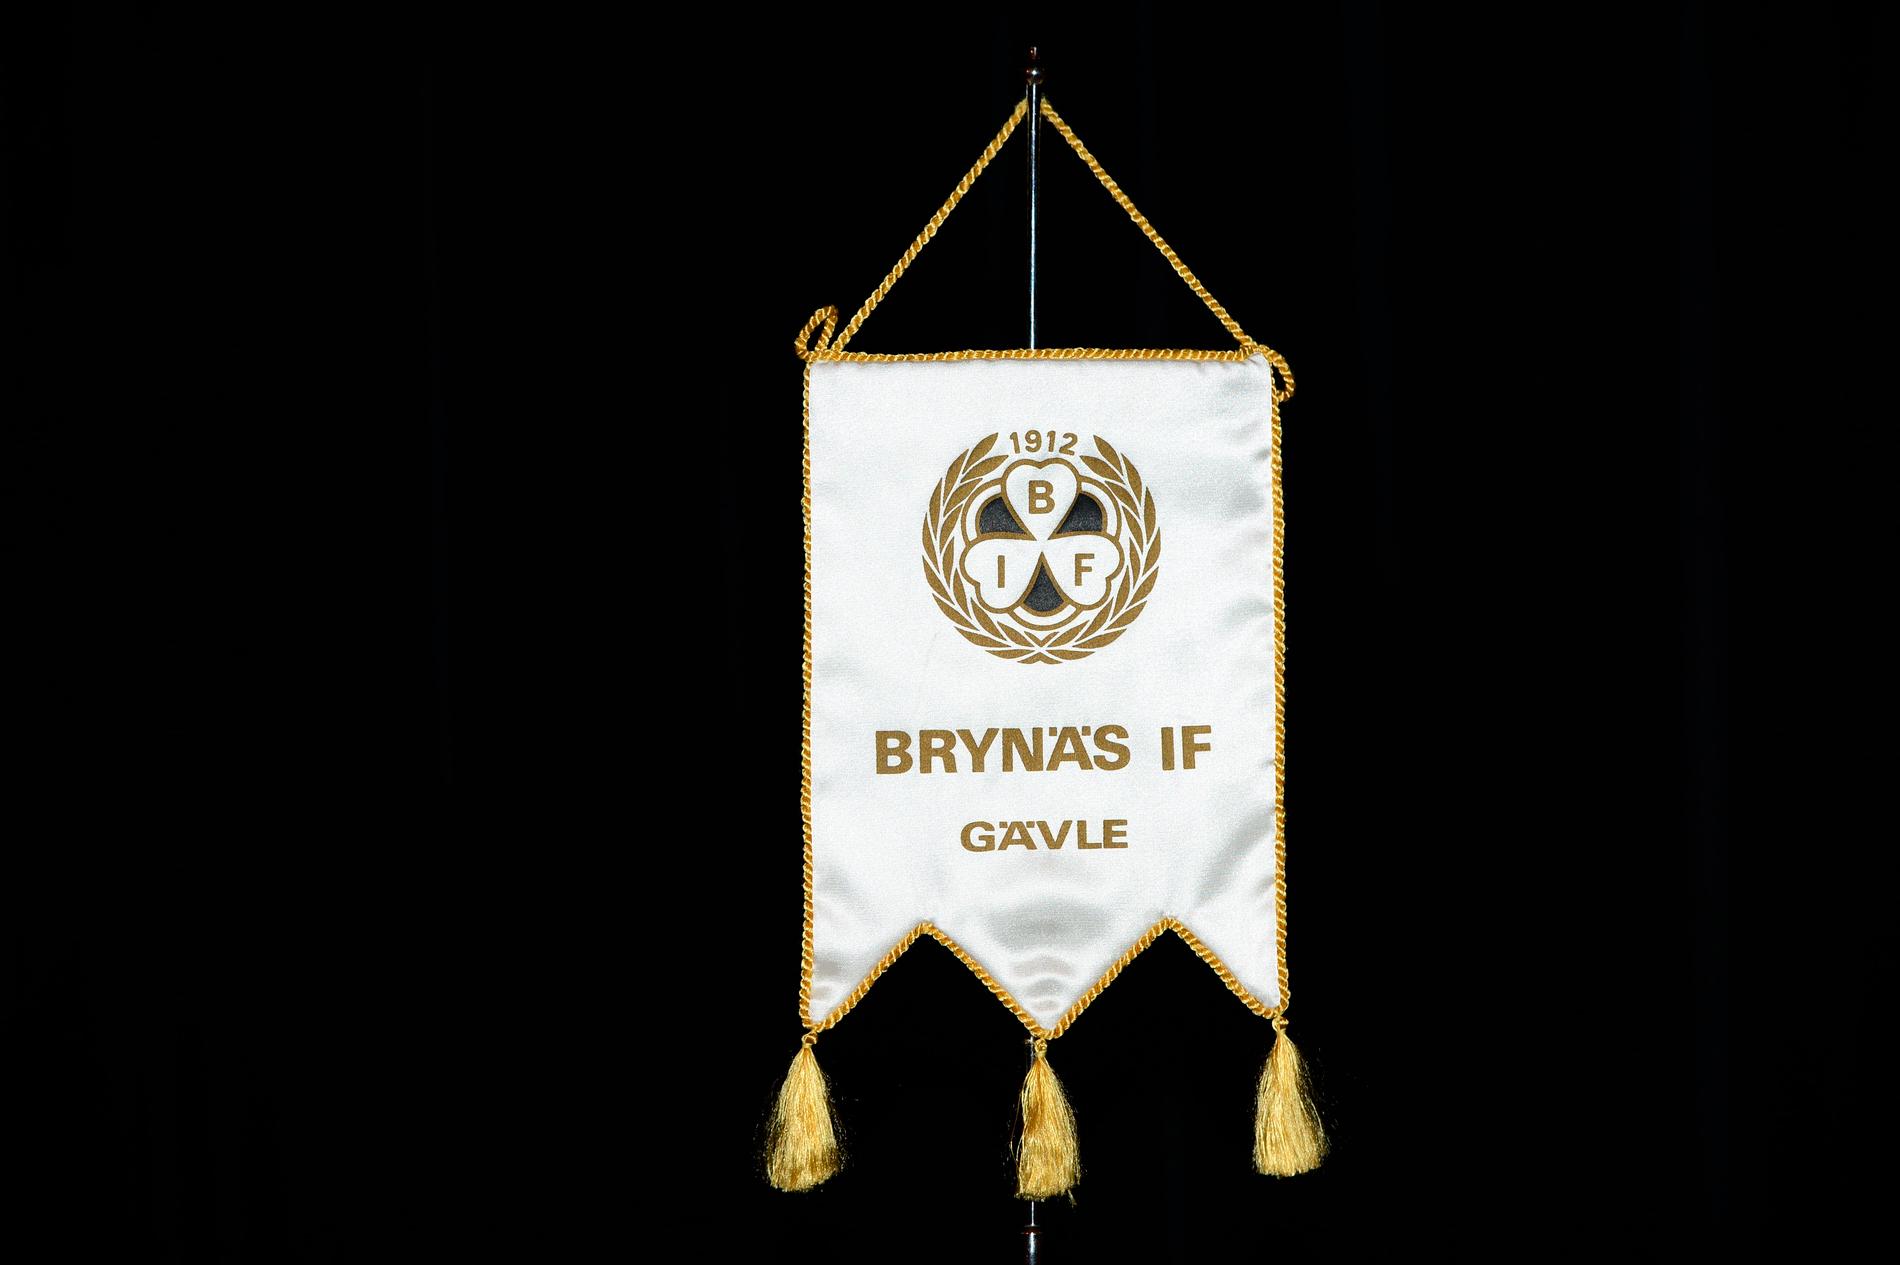 Brynäs är en klubb i kris sedan två spelare i SHL-laget misstänkts för våldtäkt. Arkivbild.